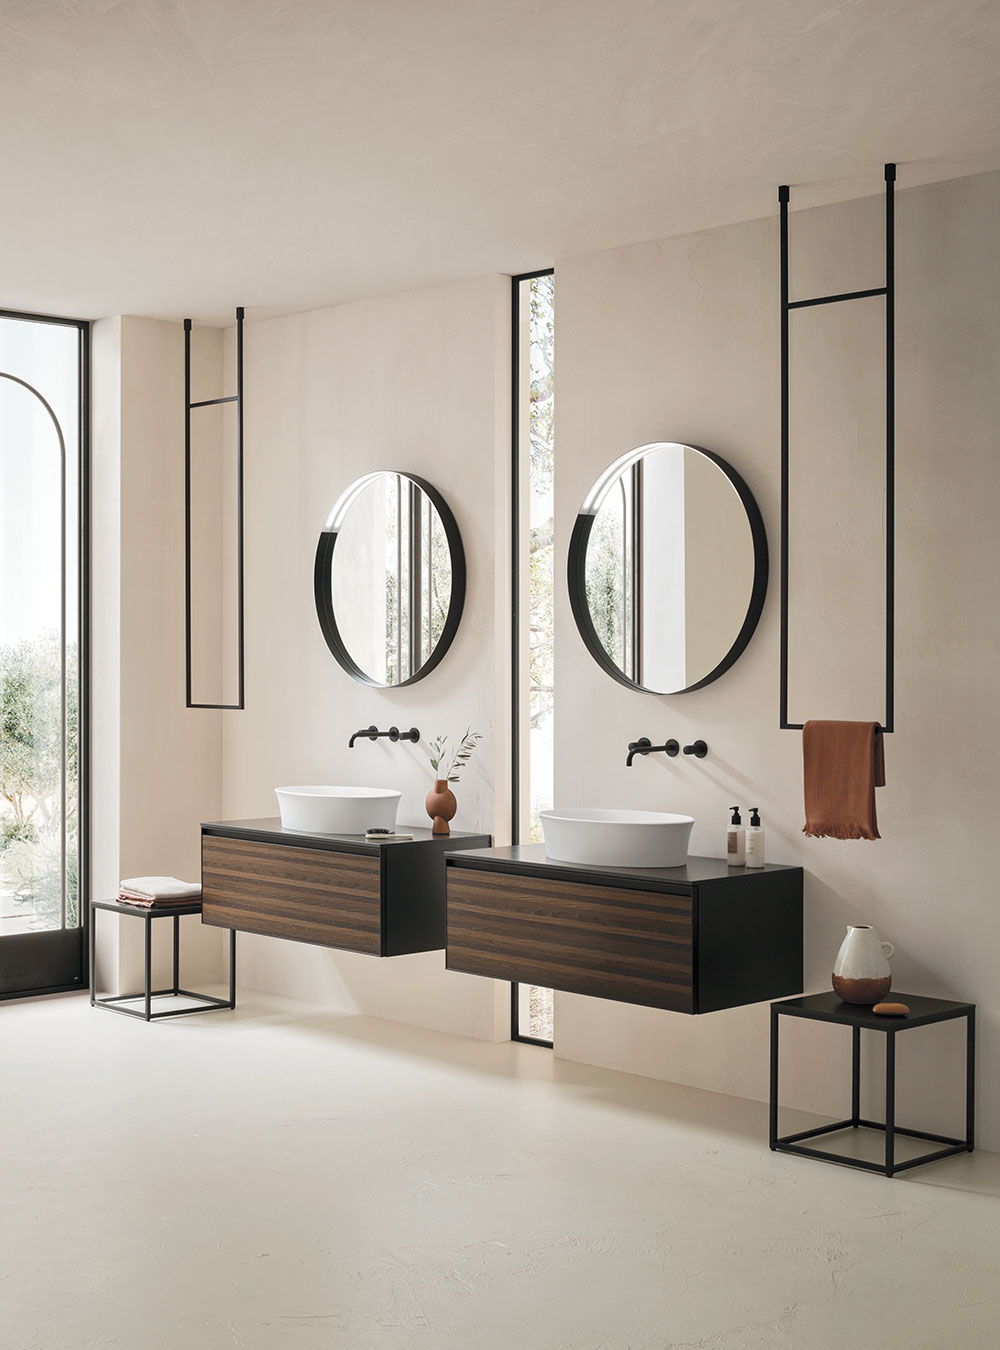 Зеркало Soul. Зеркала для мебели в ванную комнату Arbi. Дизайн сантехники. Дизайнерская сантехника для ванной комнаты